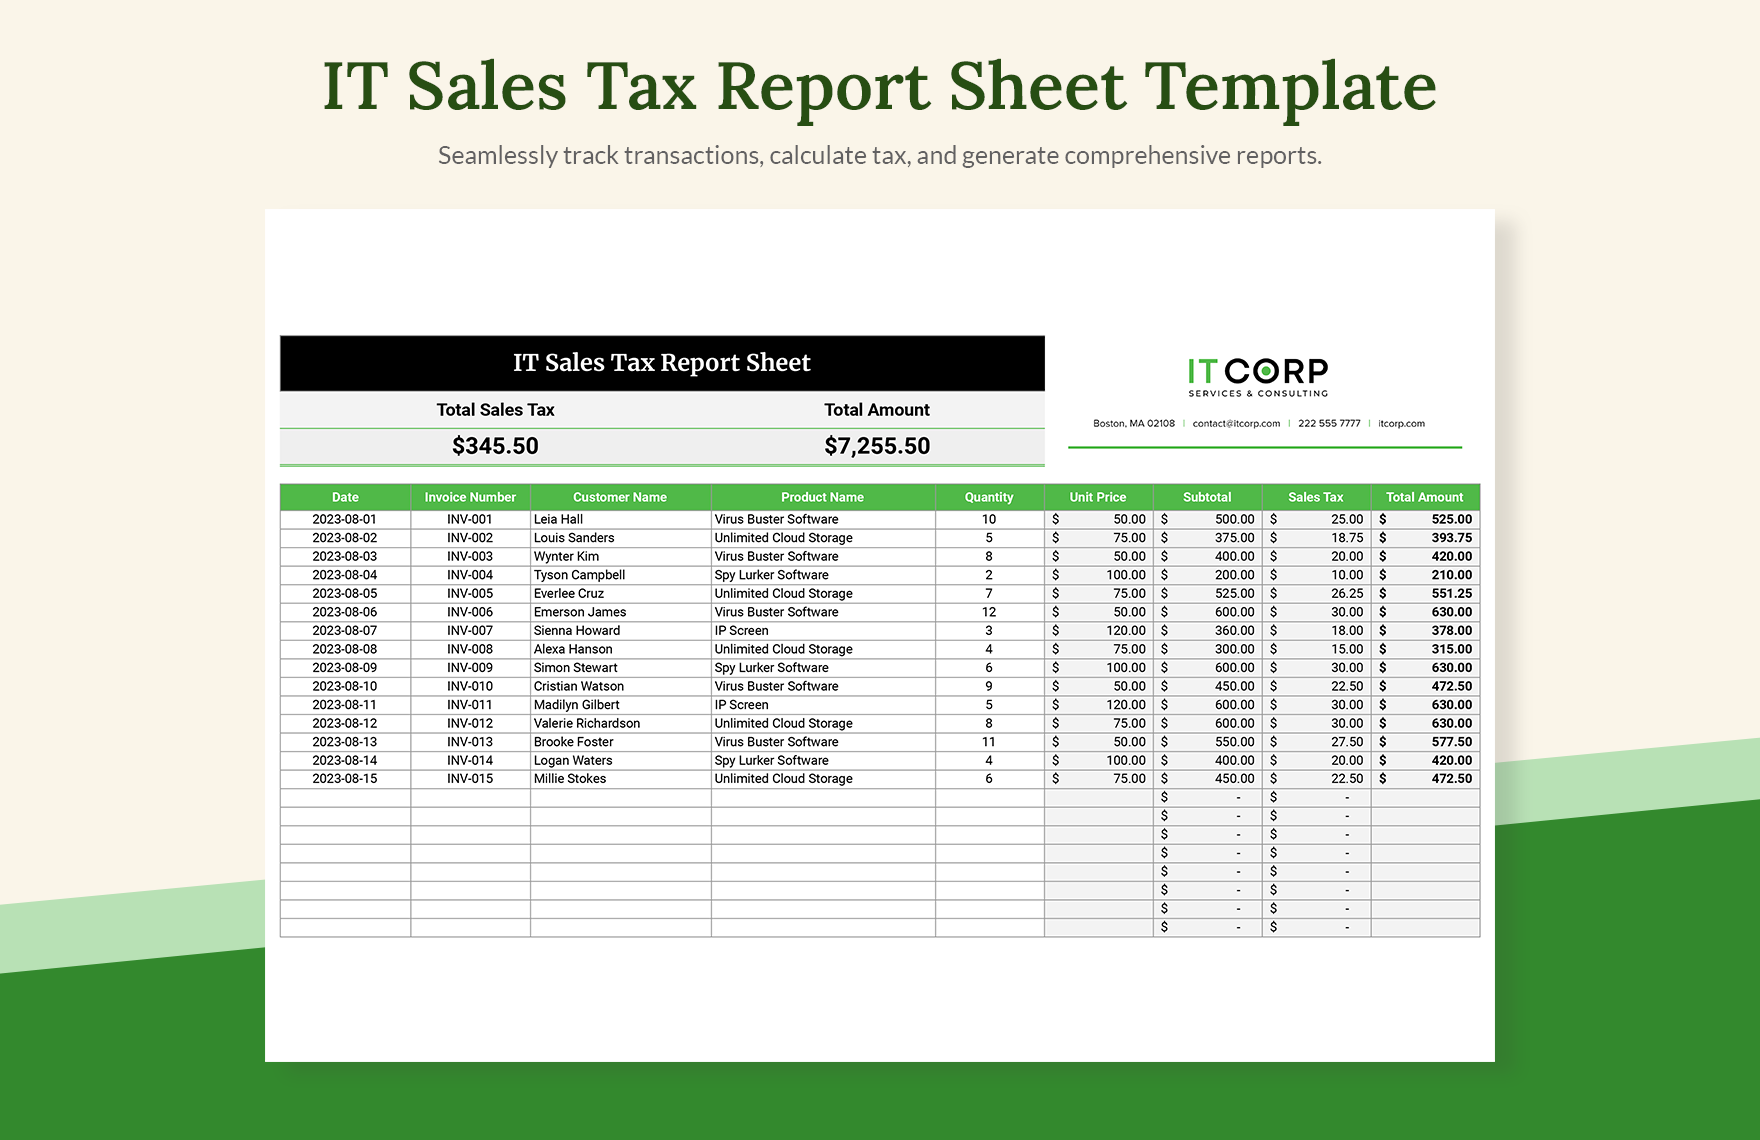 IT Sales Tax Report Sheet Template